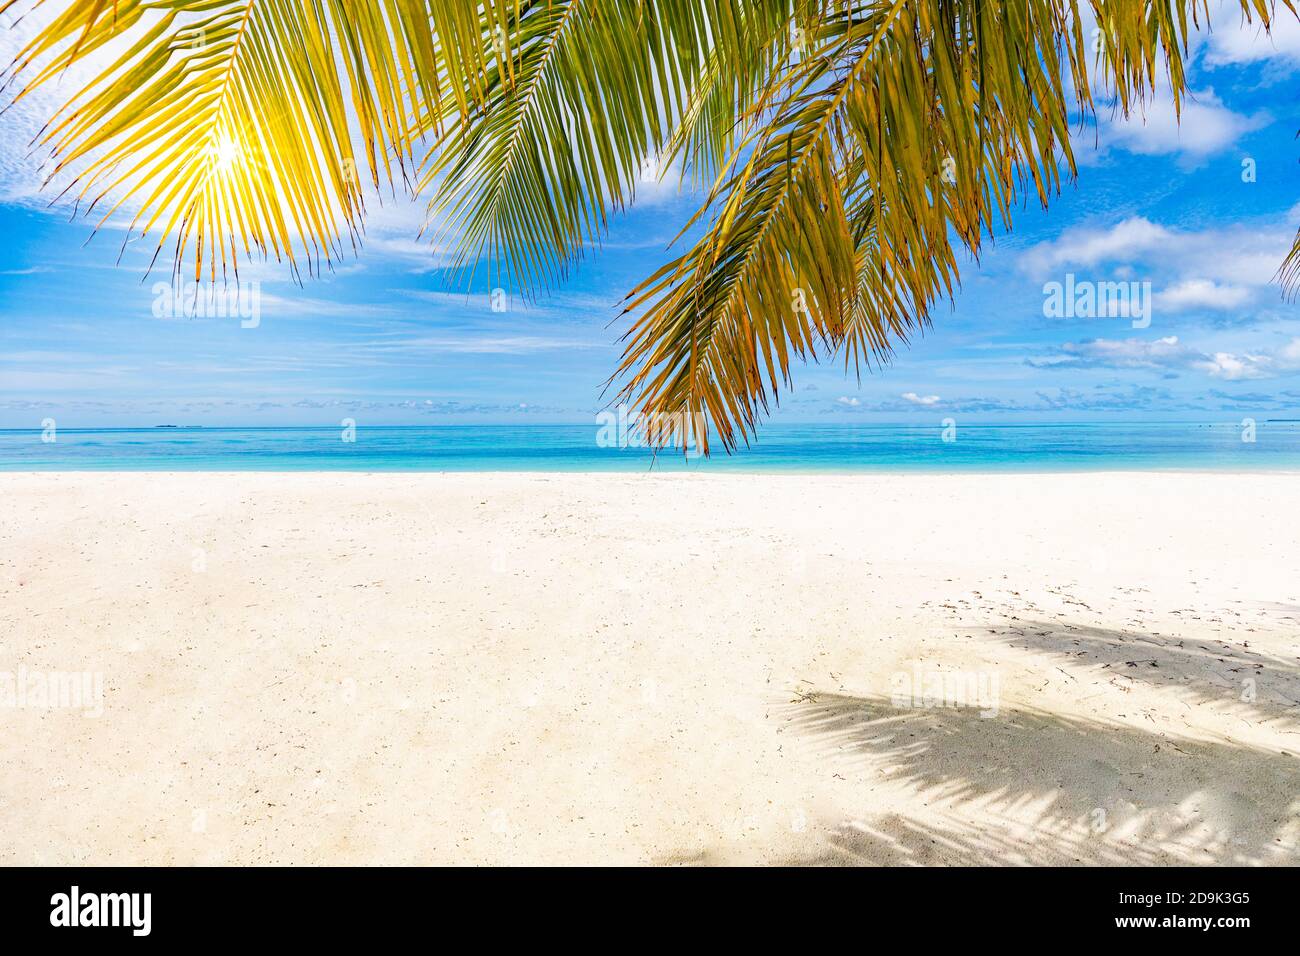 Palm et plage tropicale, paisible paysage de la nature tranquille. Paysage de mer, sable blanc près de la mer sous ciel bleu. Paysage d'été incroyable Banque D'Images